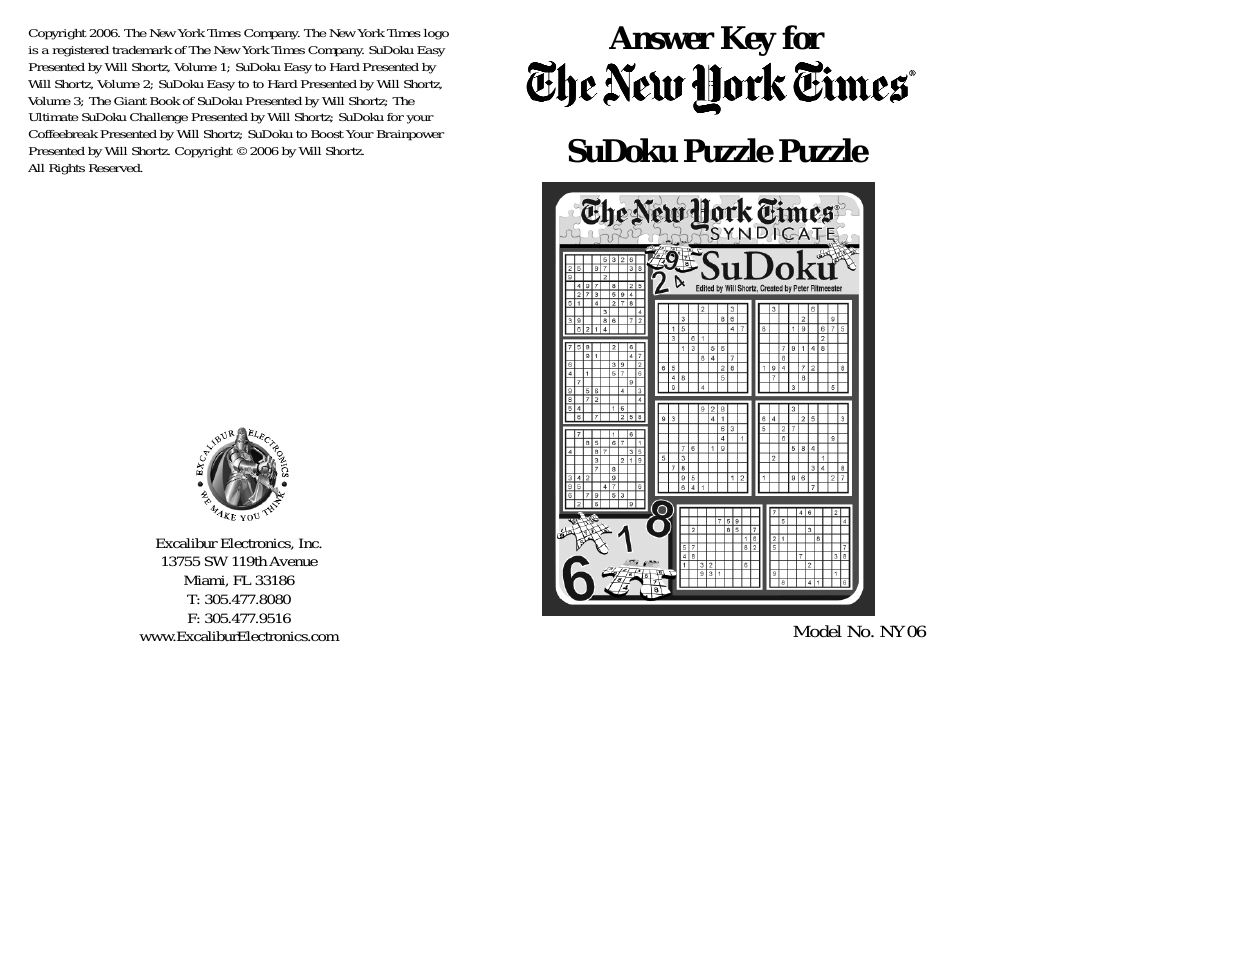 The New York Times NY06